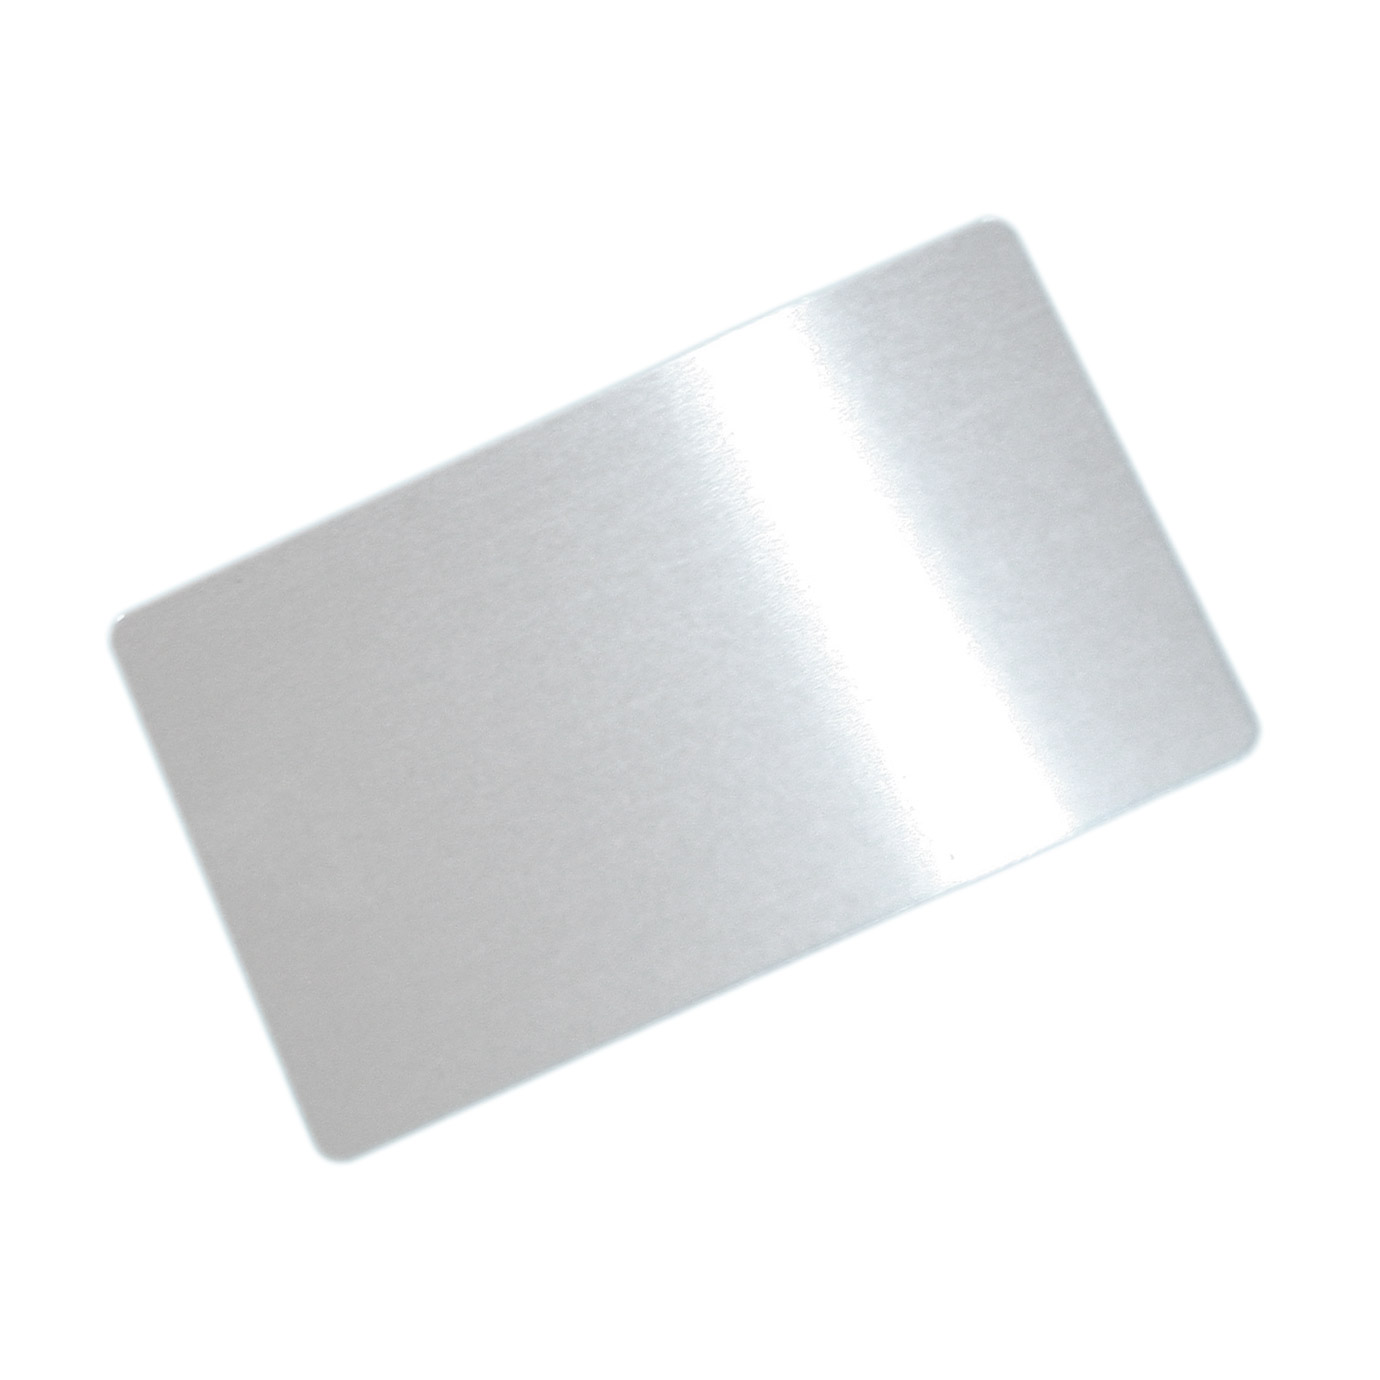 Wizytówki aluminiowe do sublimacji - 100 sztuk